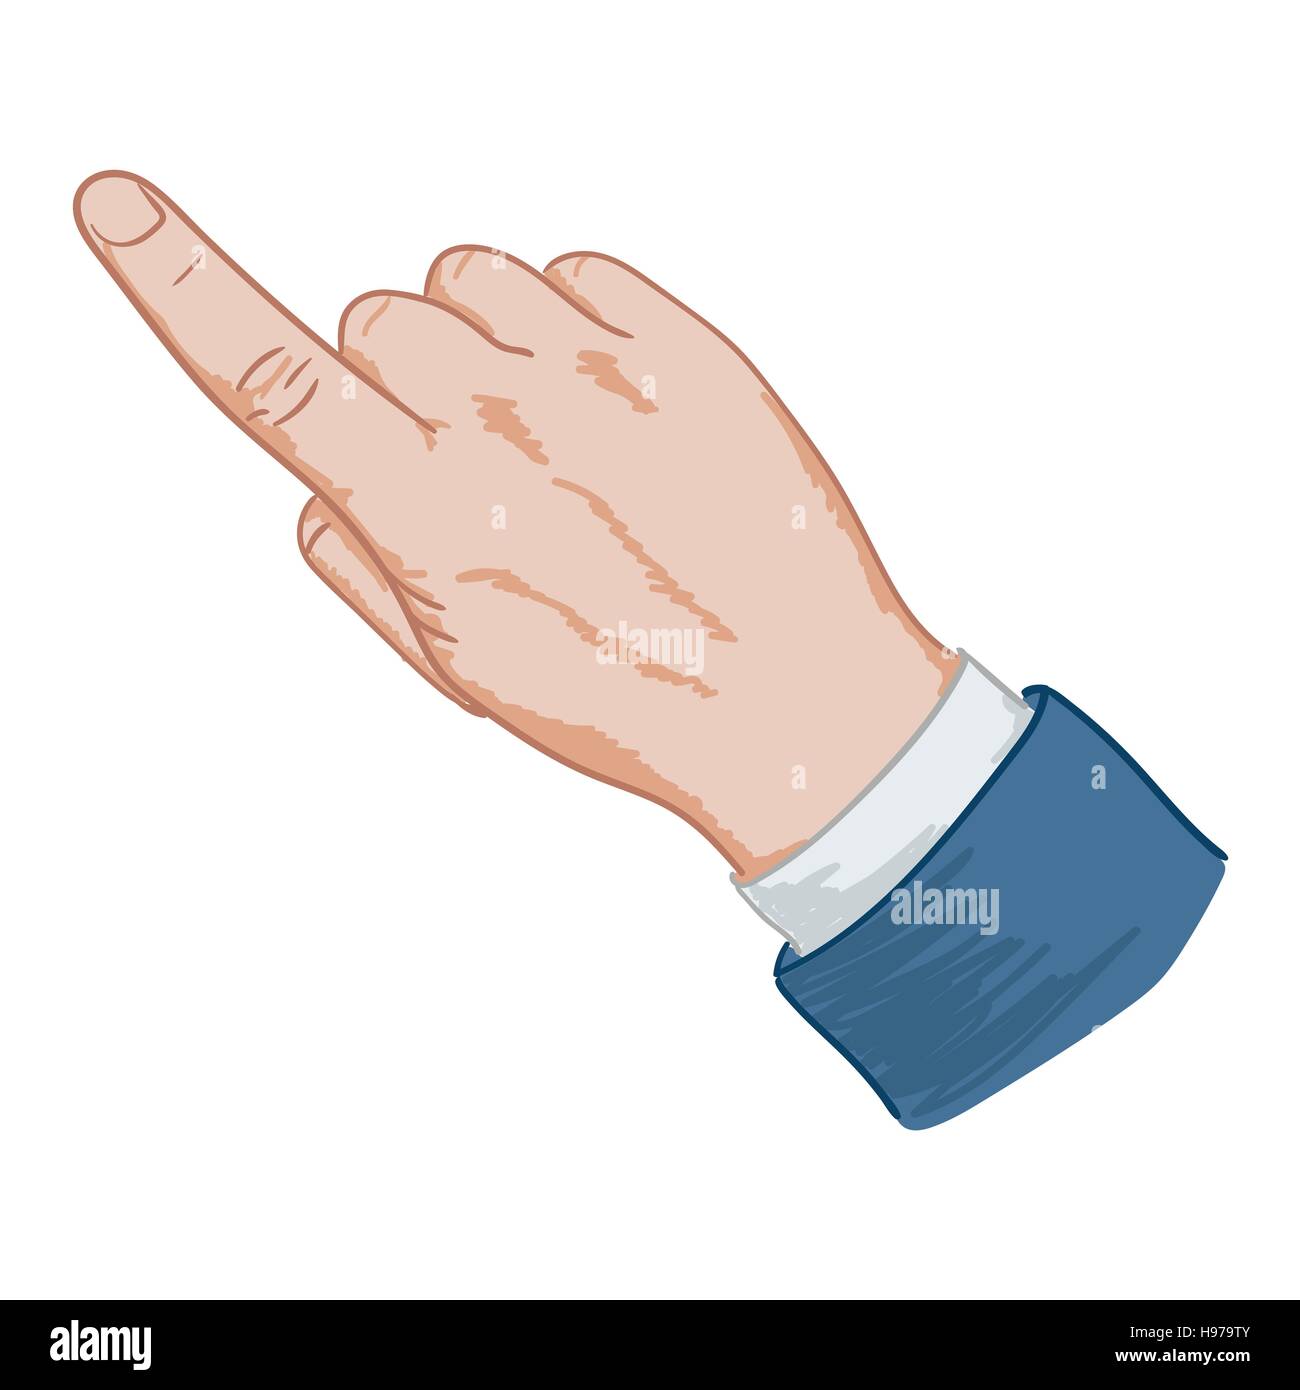 Zeigefinger der Hand-Zeichen Stock Vektor